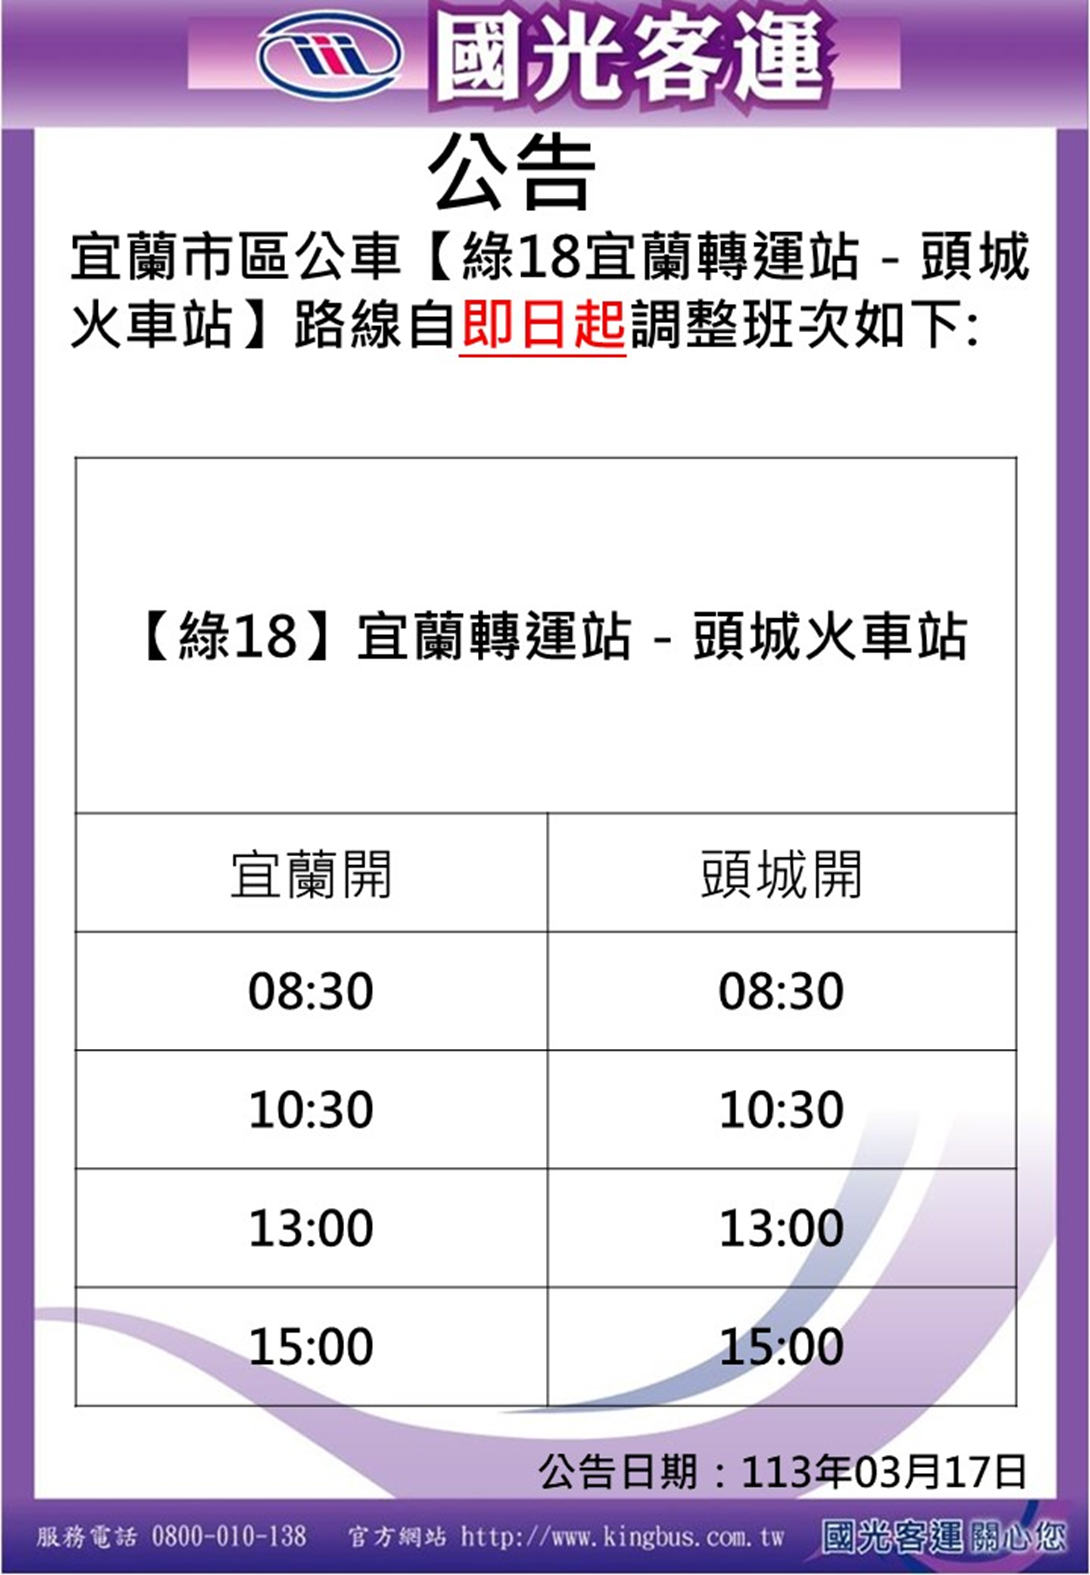 Jadwal bus Taiwan Hao Xing Green 18 Zhuangwei Dune Line berubah